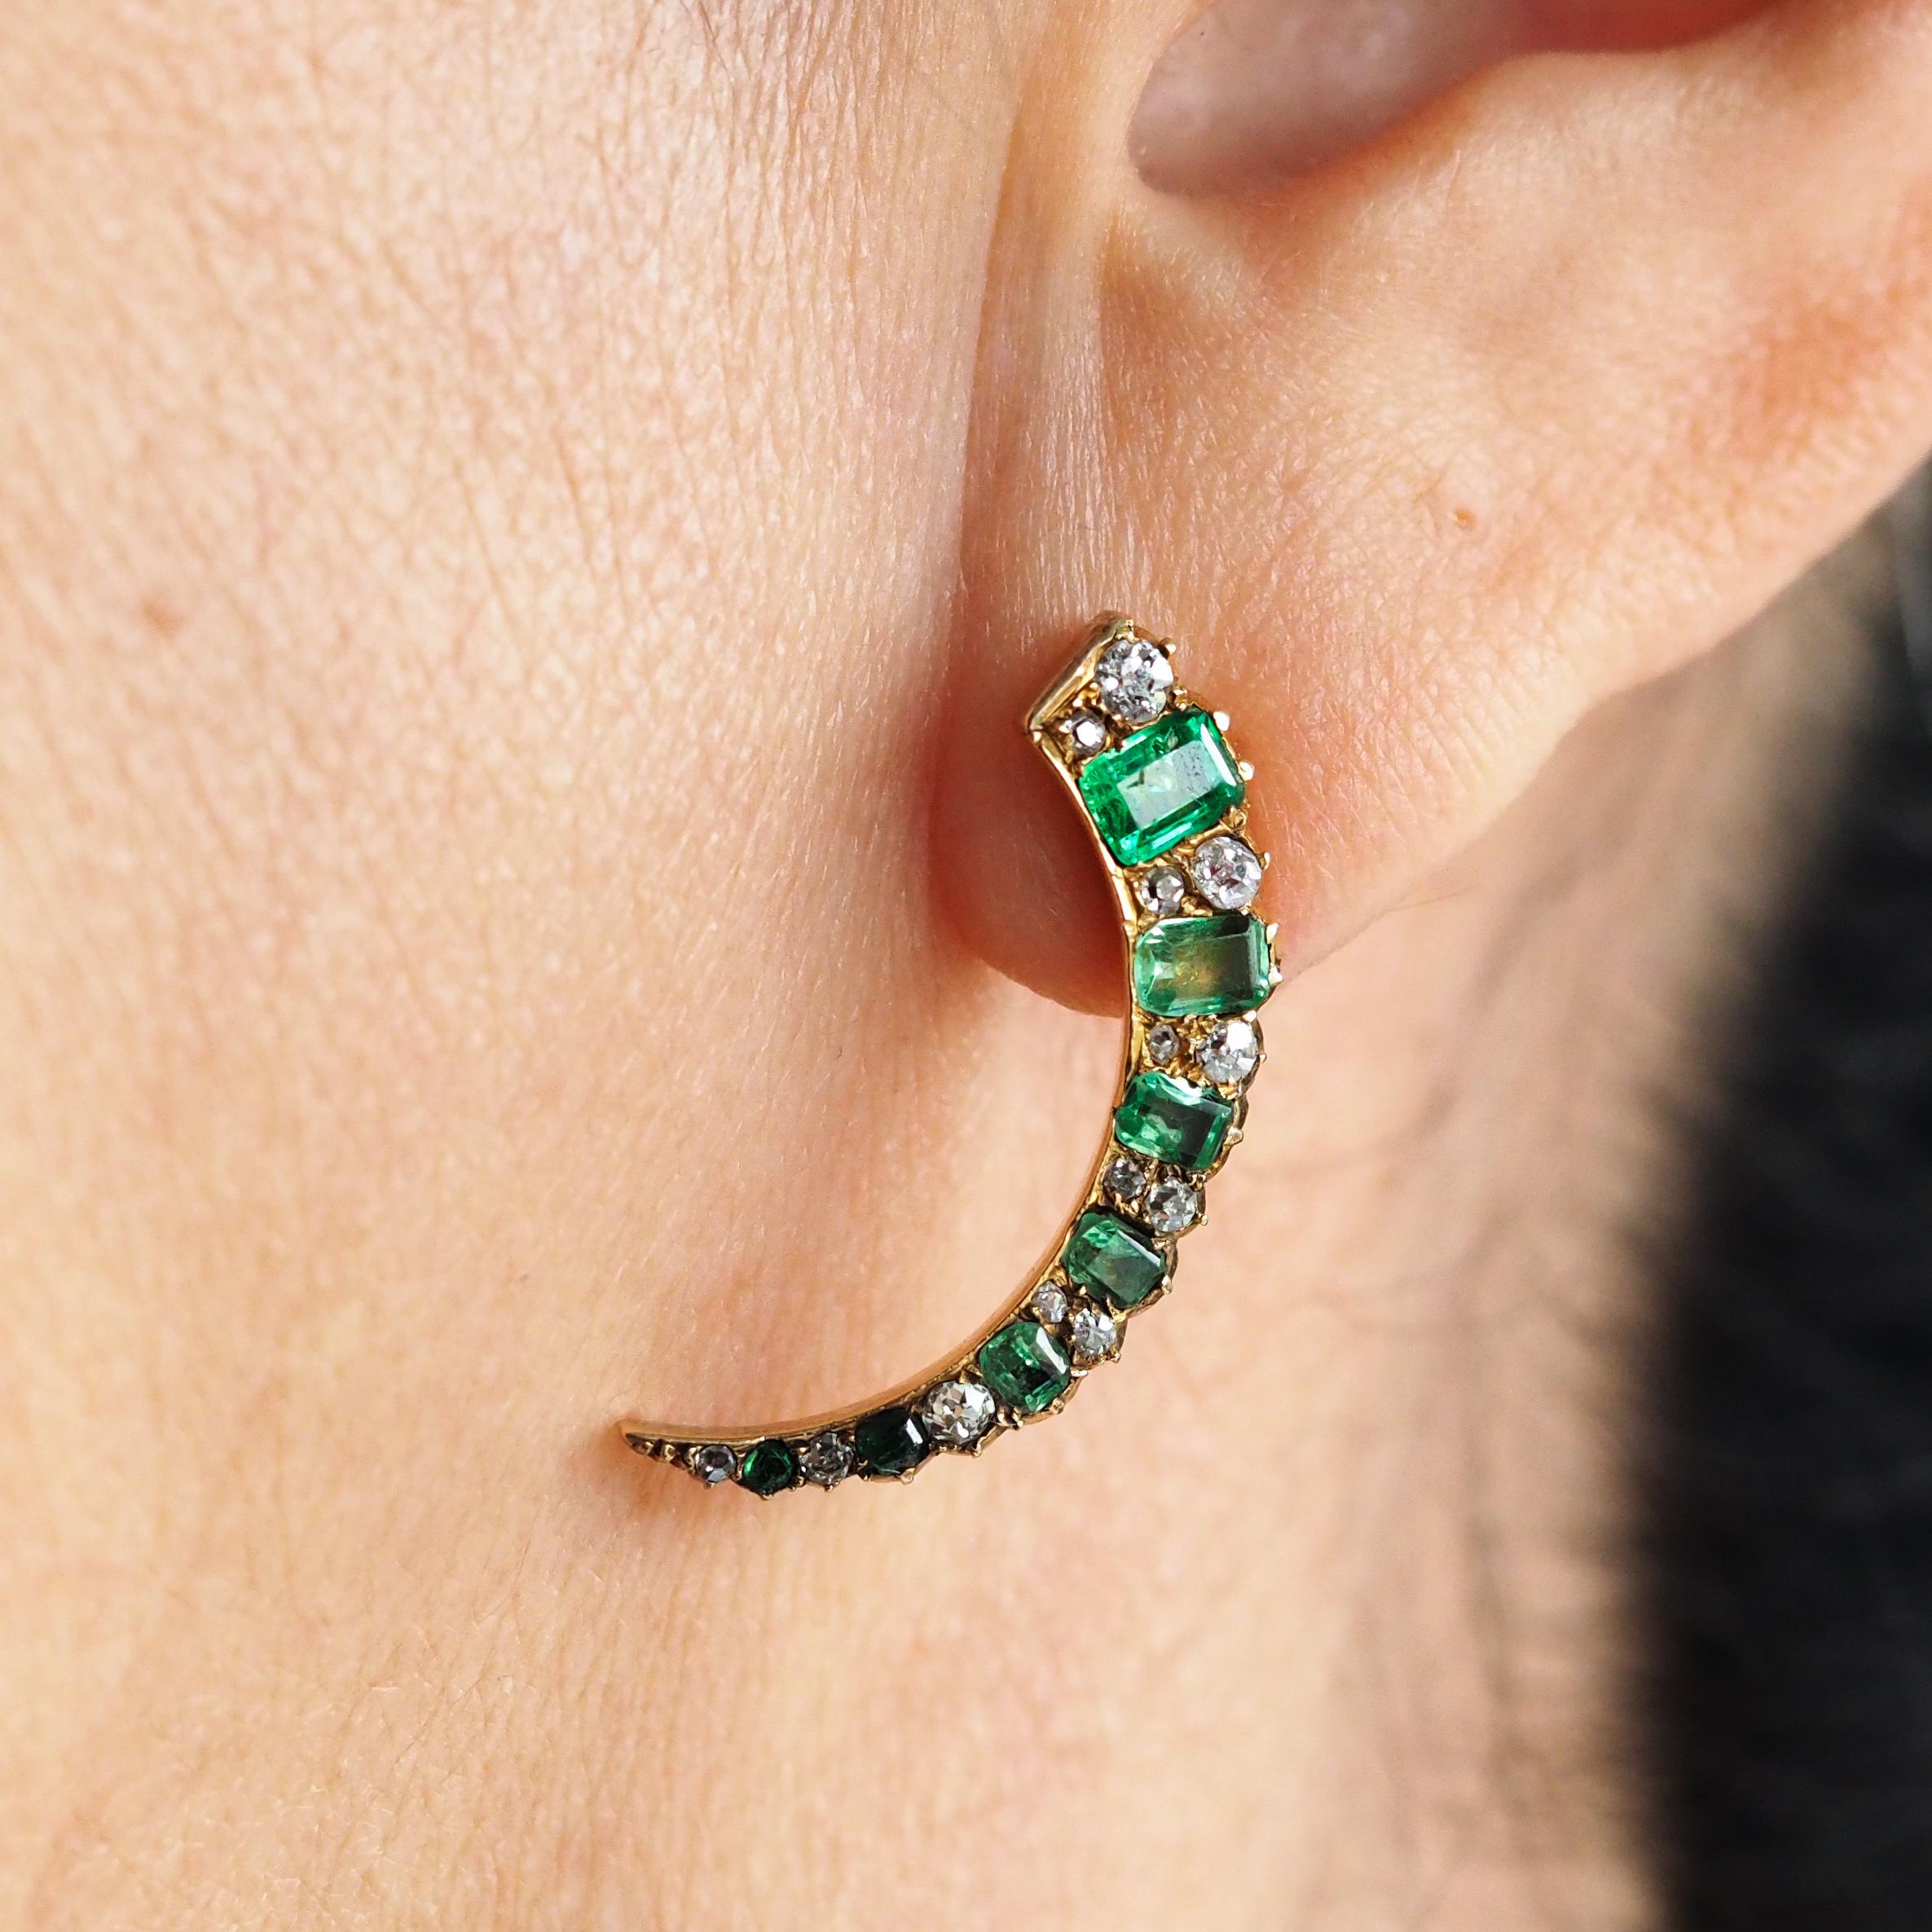 Wir freuen uns, dieses atemberaubende Paar antiker viktorianischer Ohrringe aus 18 Karat Gold mit Smaragden und Diamanten anbieten zu können, die um 1890 hergestellt wurden.
 
Dieses auf den ersten Blick fesselnde und mit einem himmlischen Thema